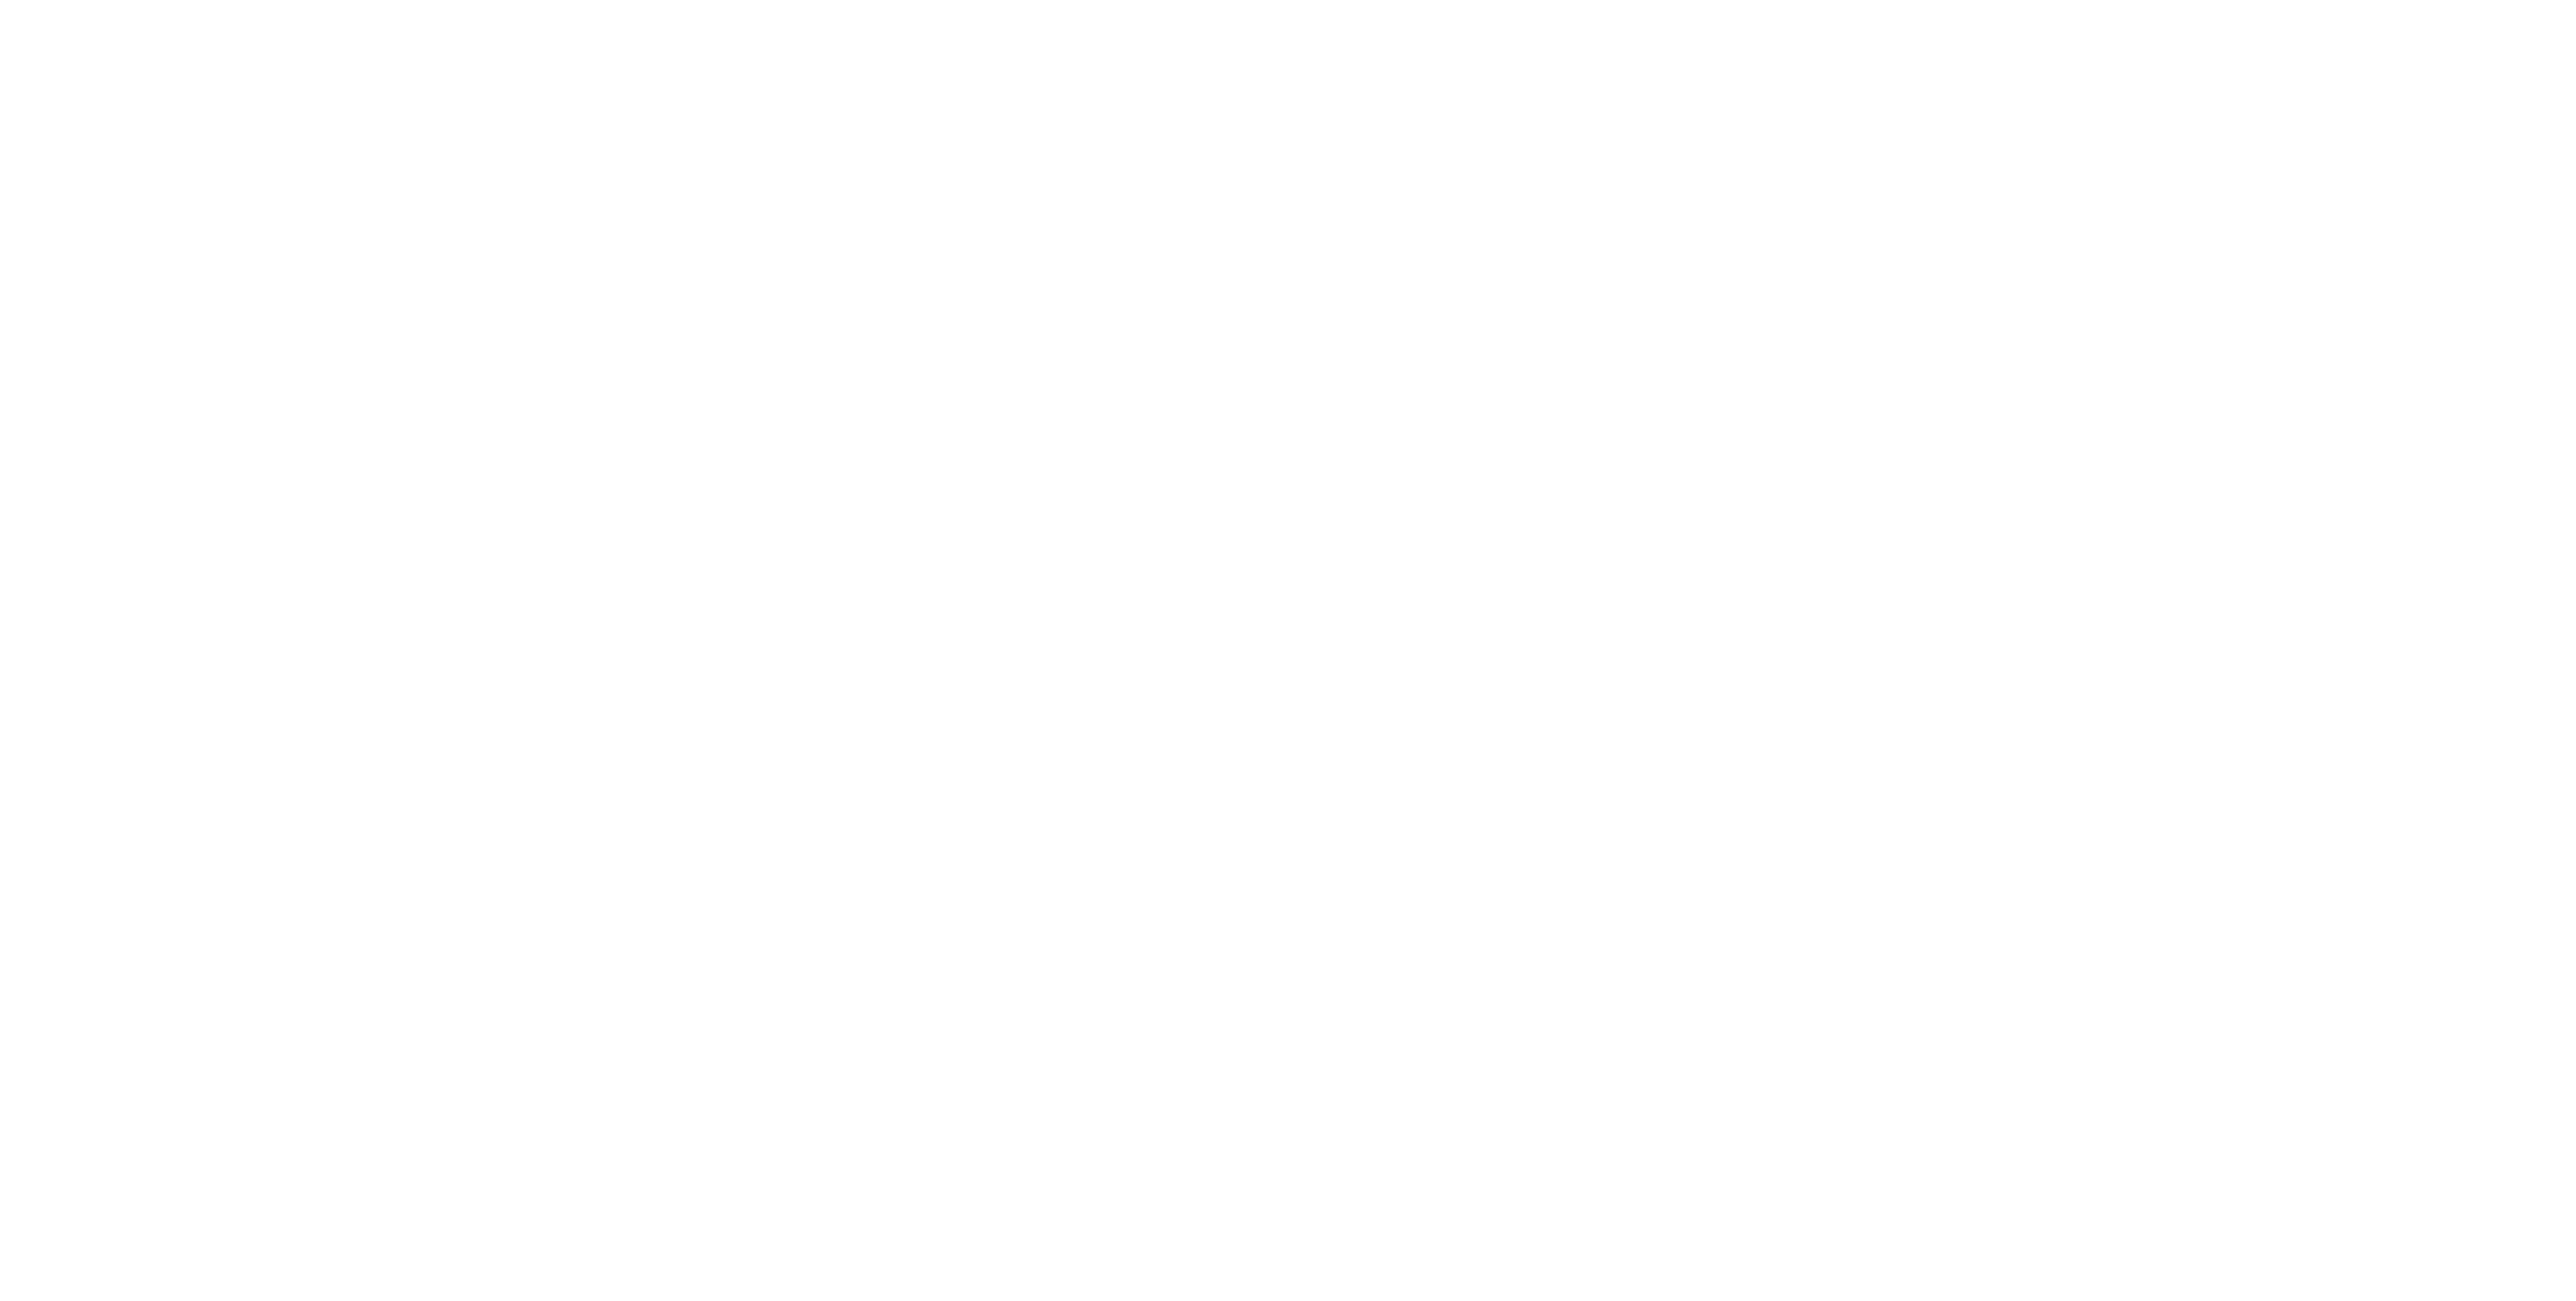 Lenses Films